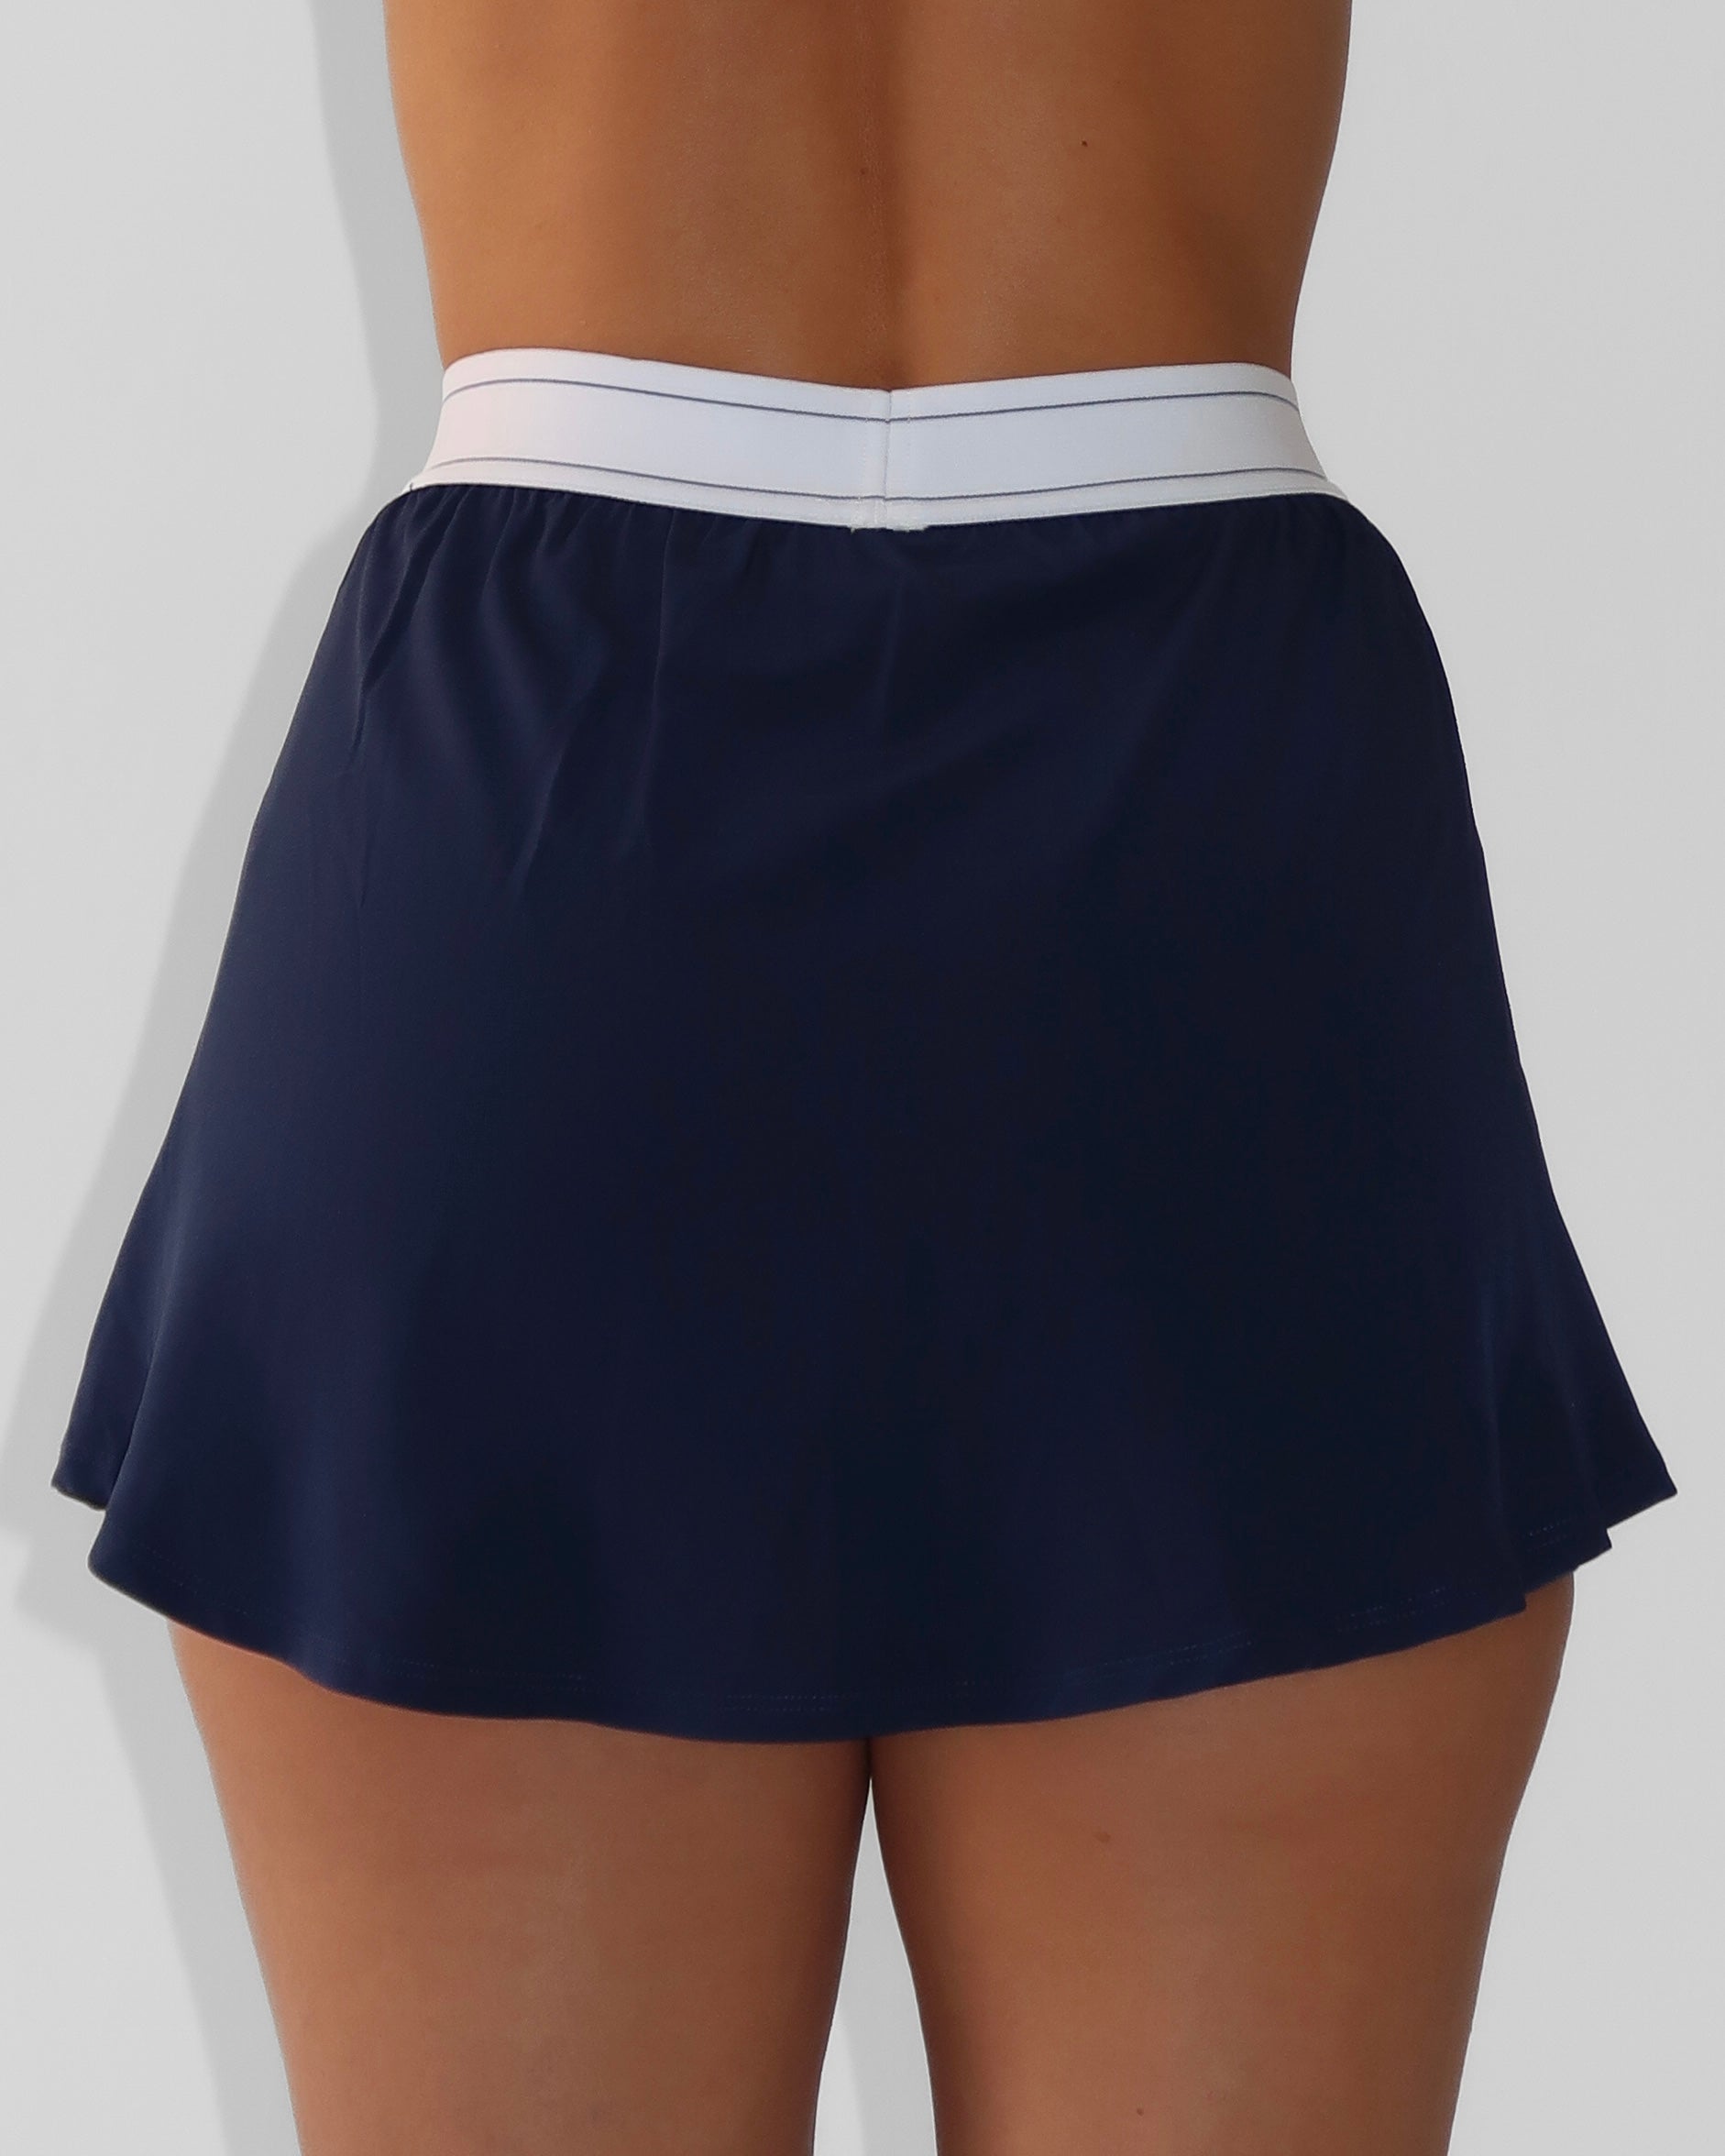 Serenity Skirt - Navy